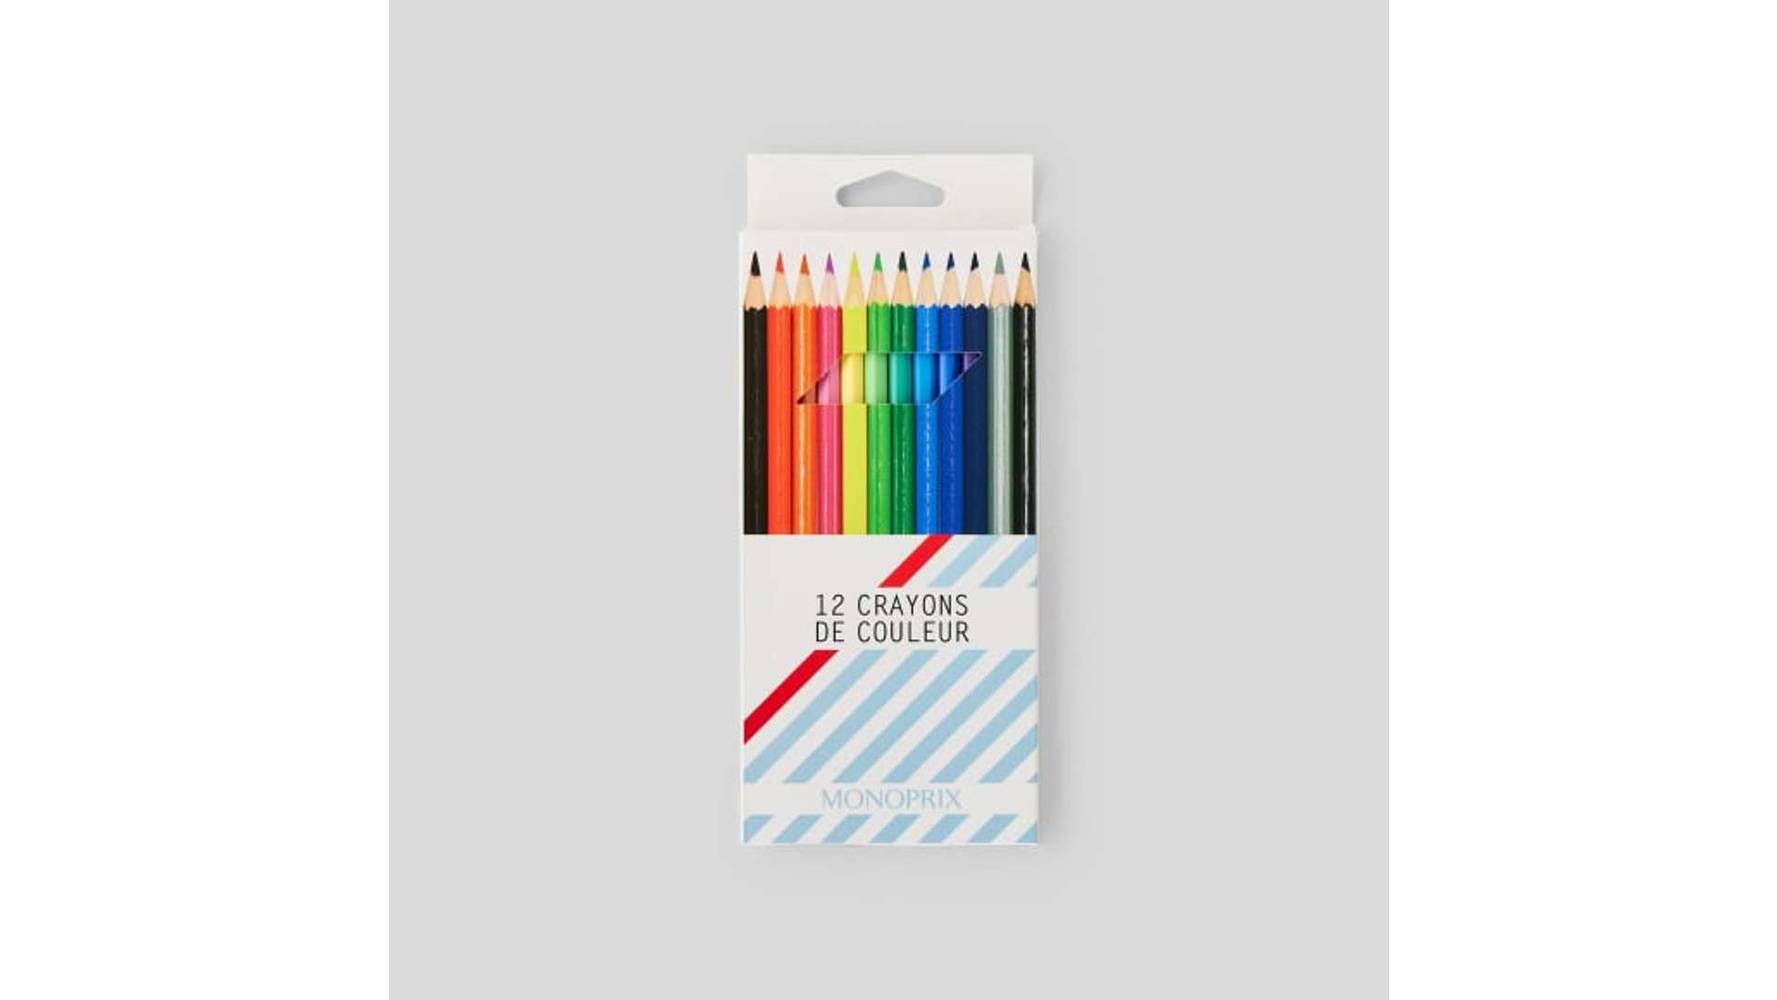 MONOPRIX 12 crayons de couleurs L'assortiment de 12 crayons